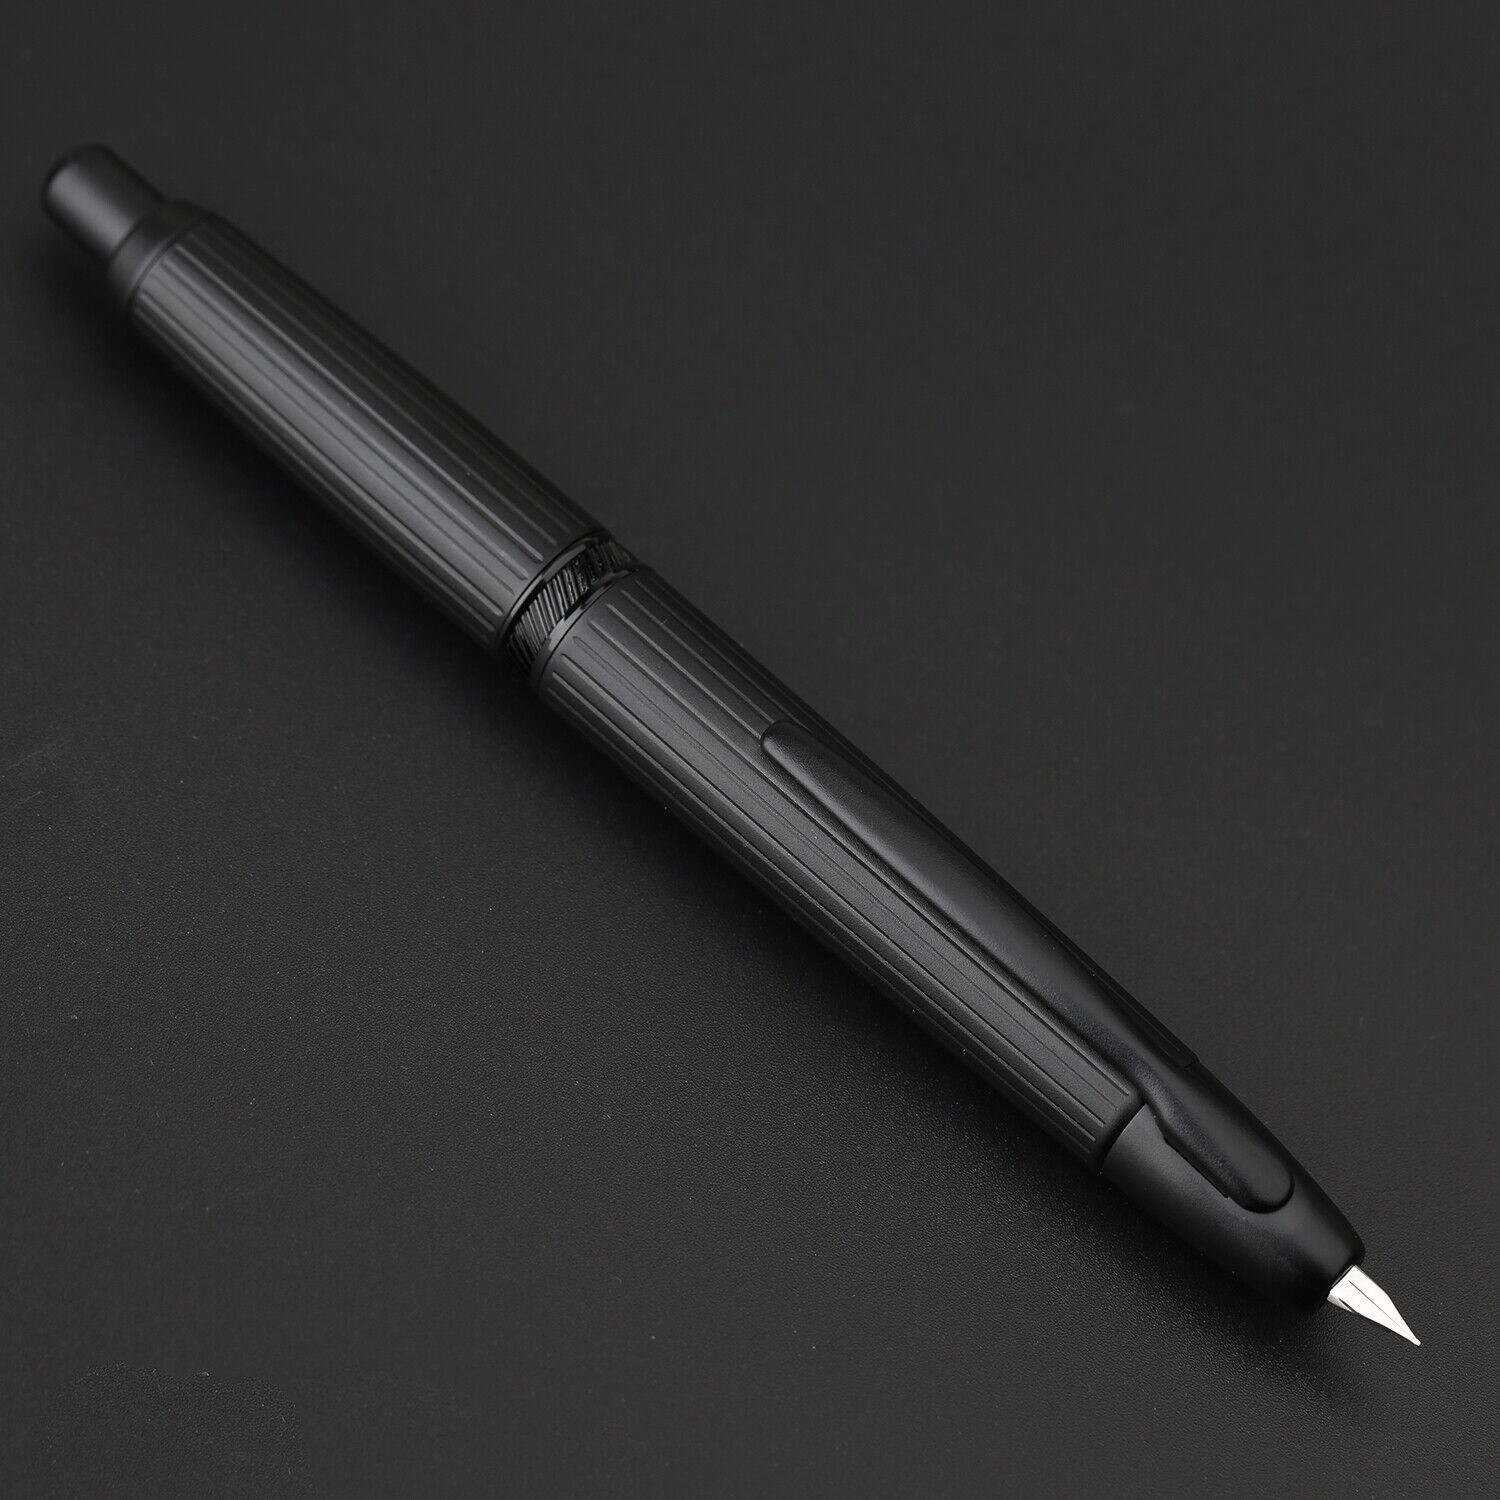 Majohn A1 Retractable Press Fountain Pen, Matte Black Metal Ink Pen & Converter